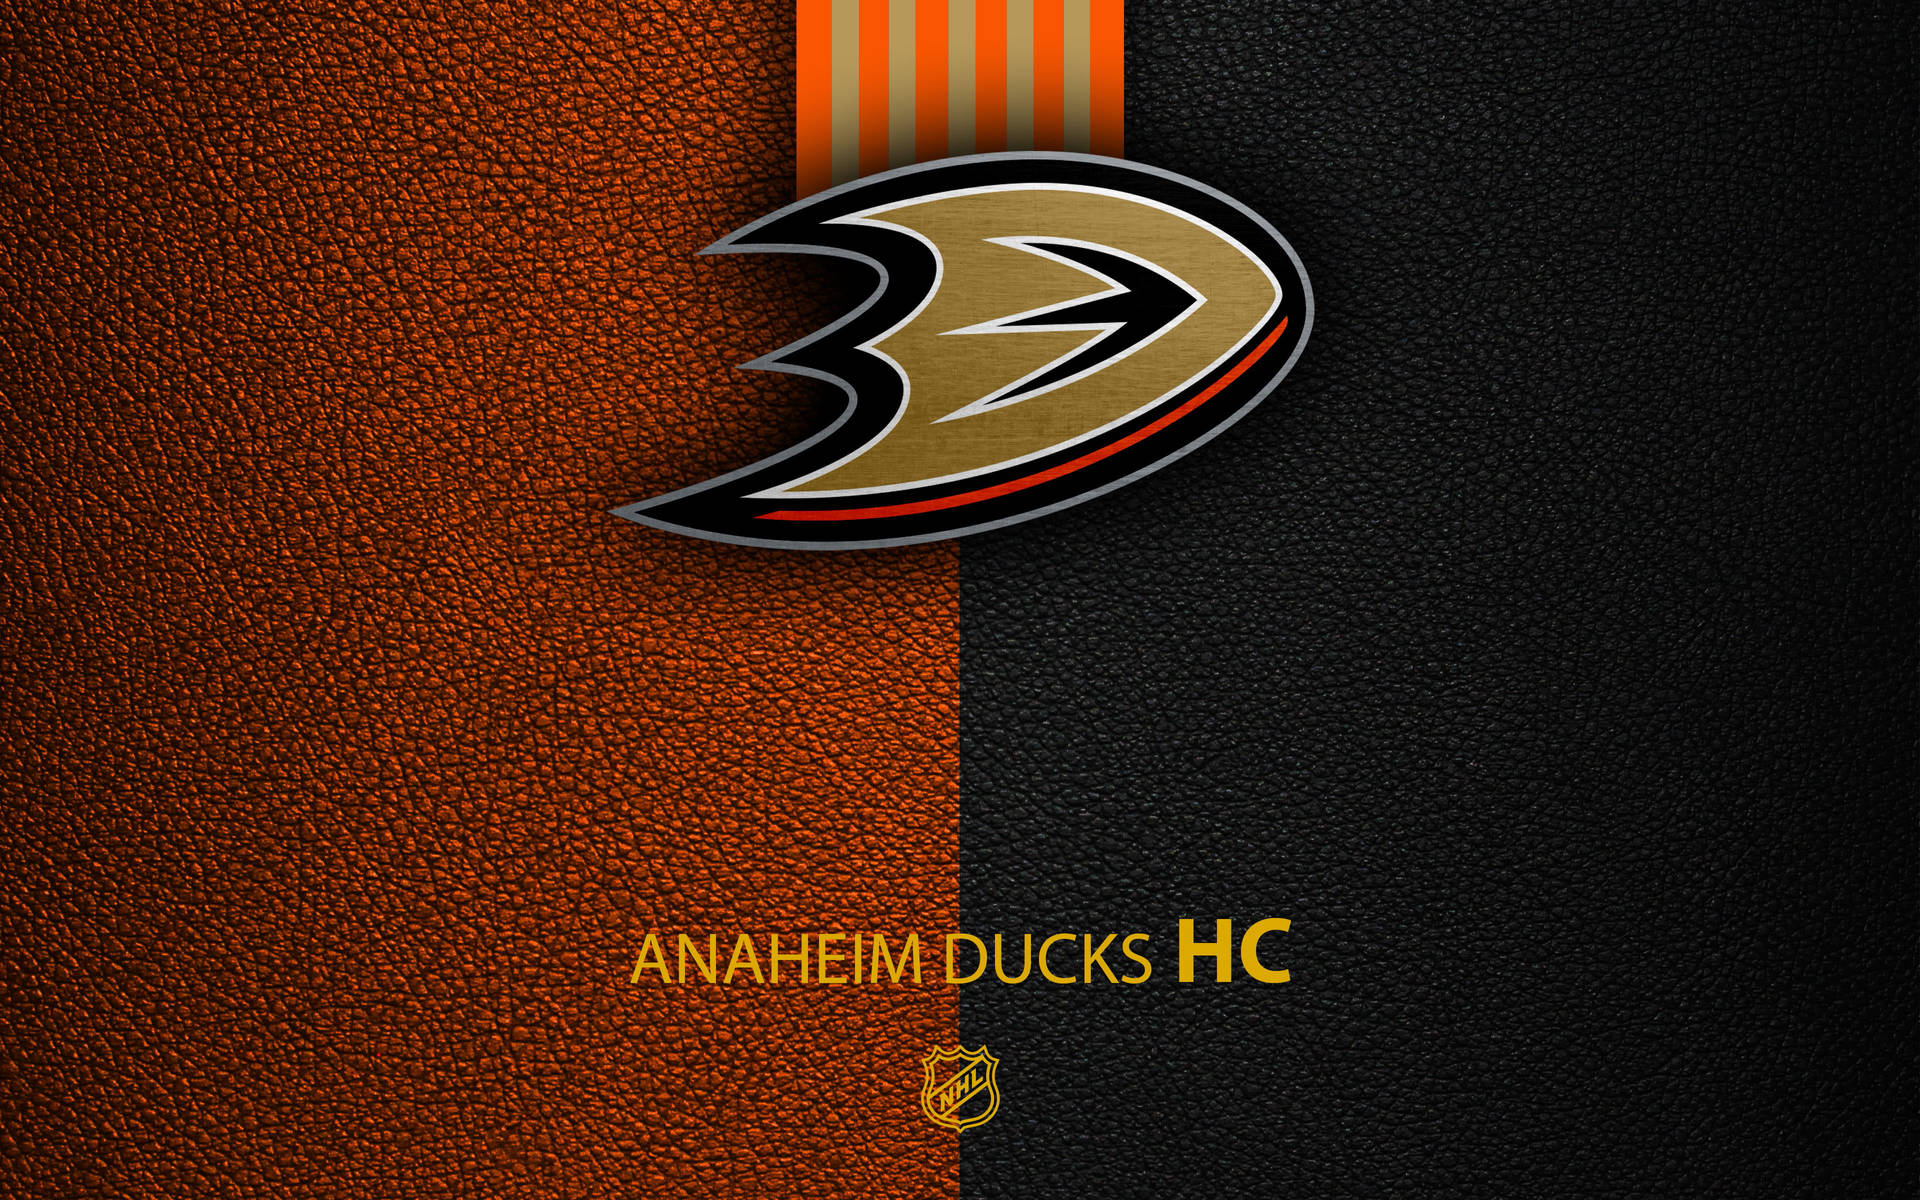 Anaheim Ducks Pictures